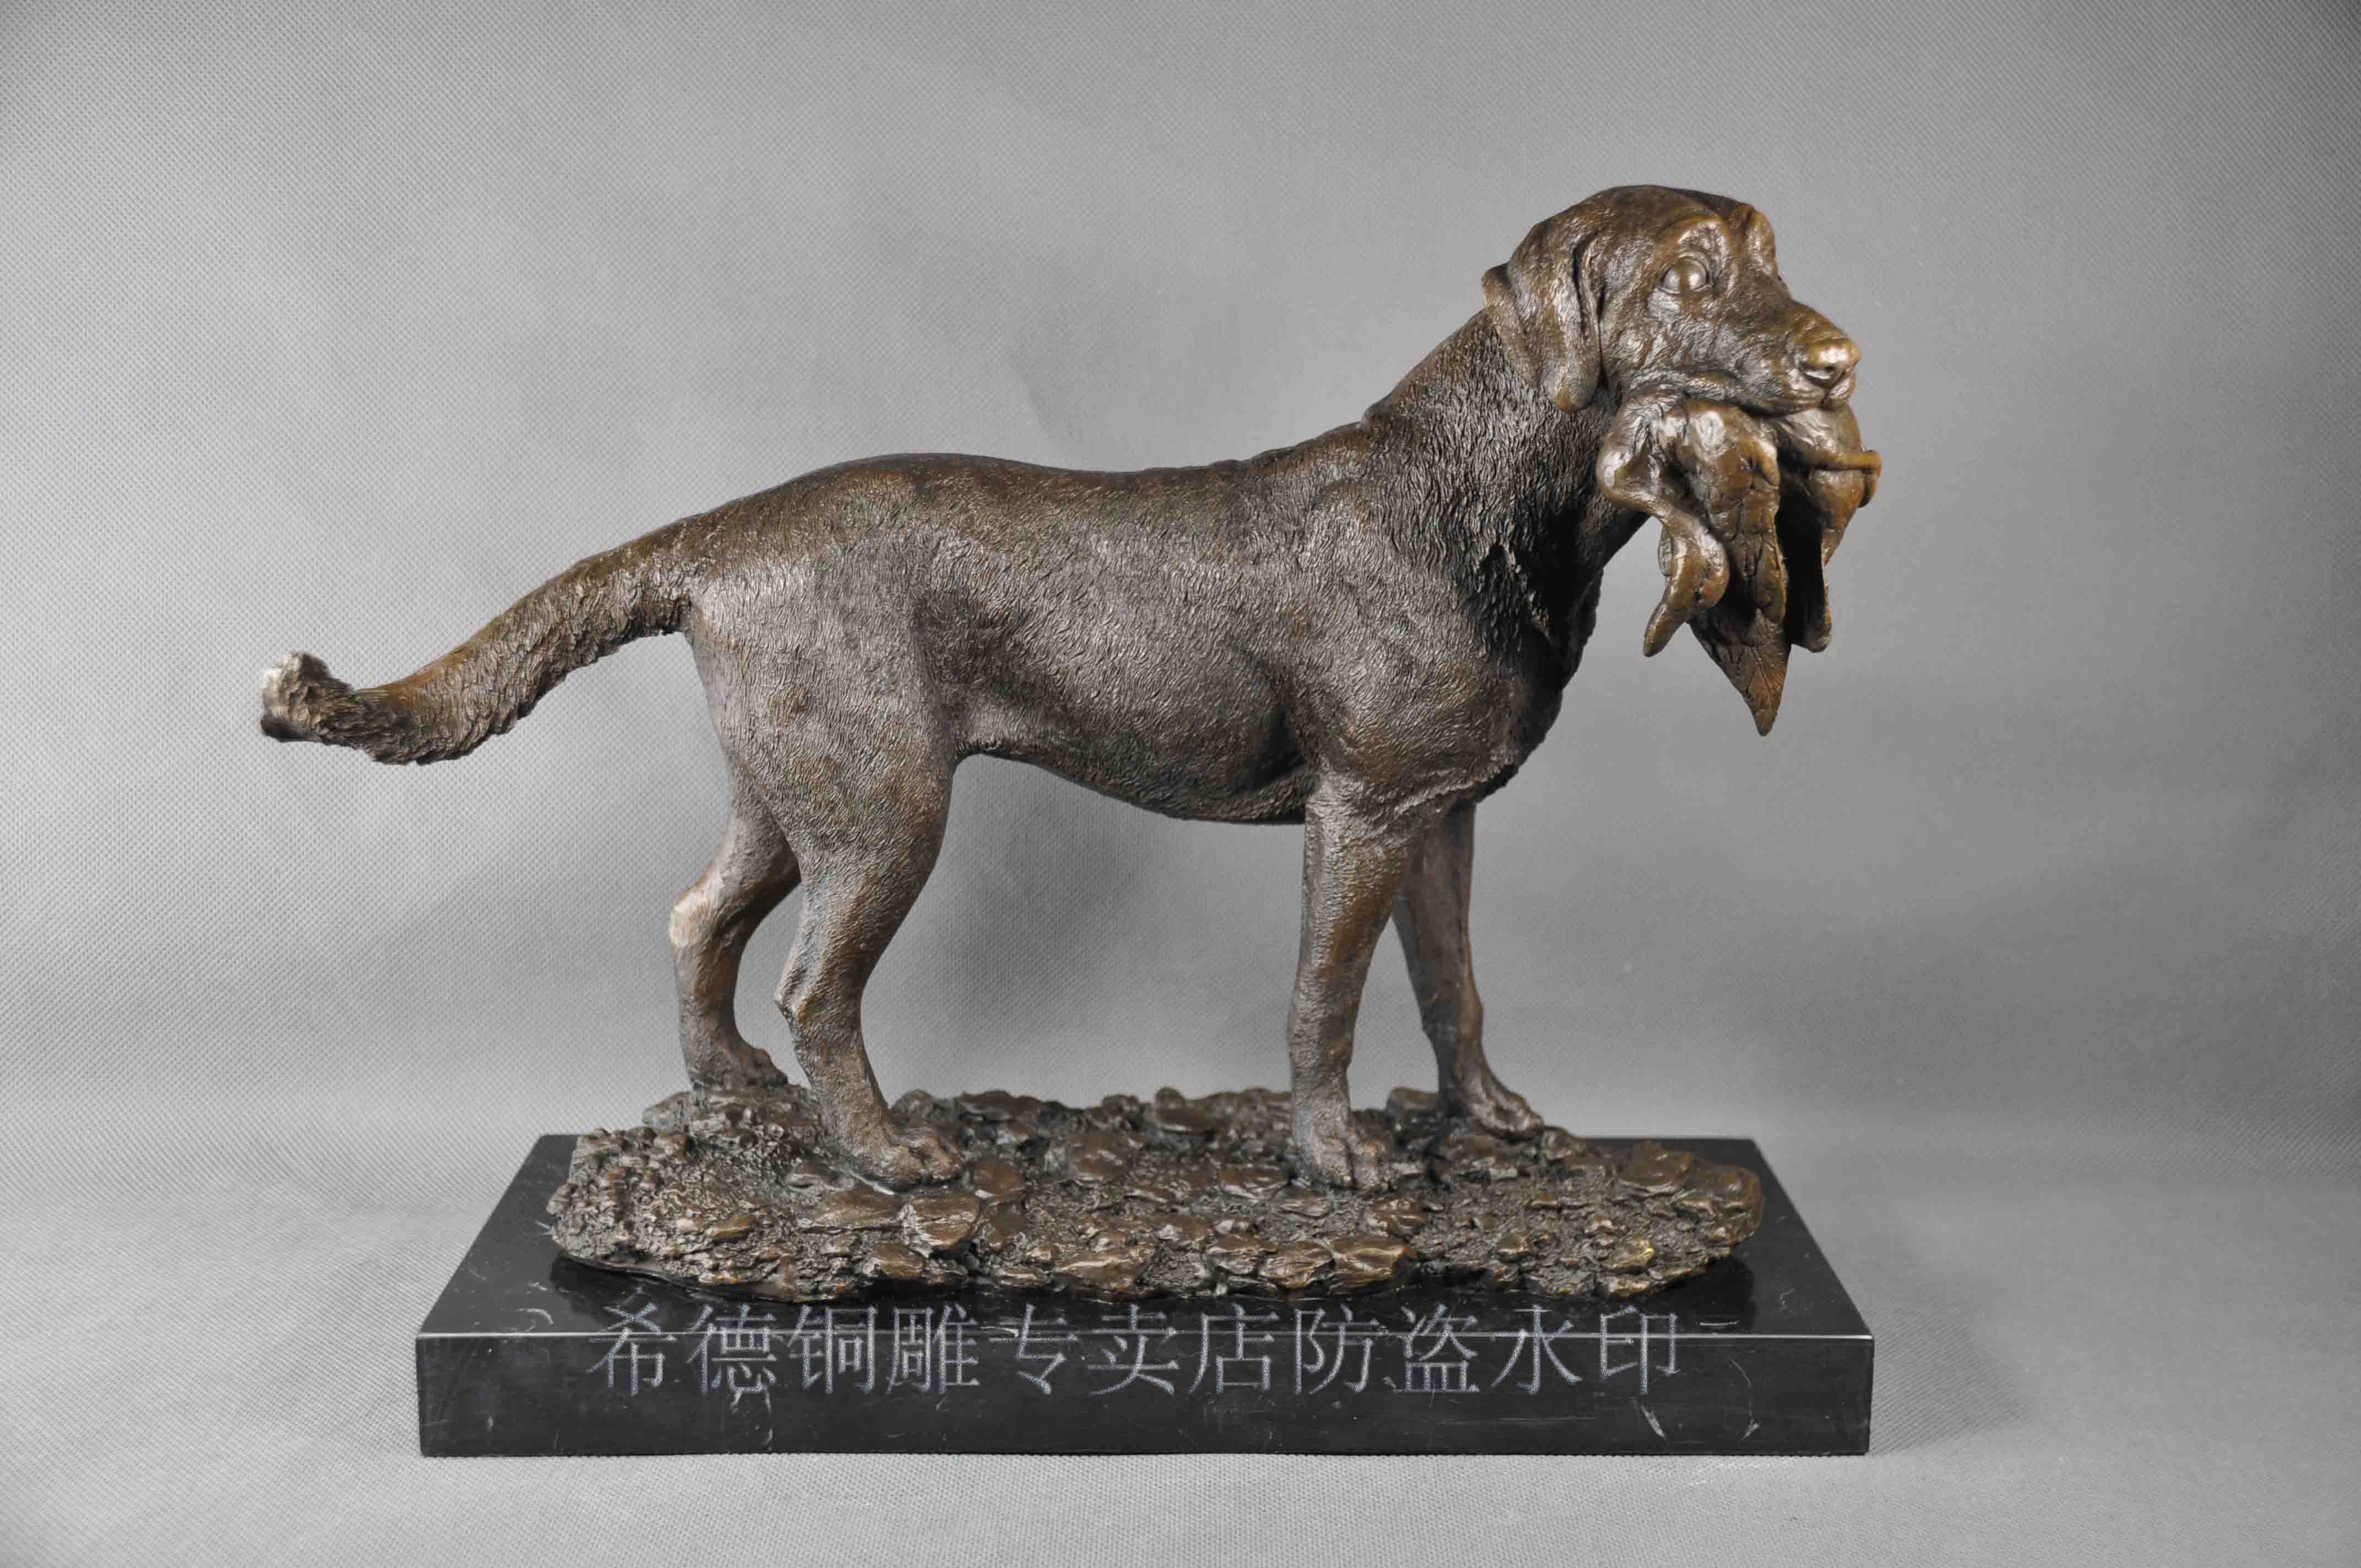 Copper sculpture animal series copper crafts gift crafts derlook dog dw-039